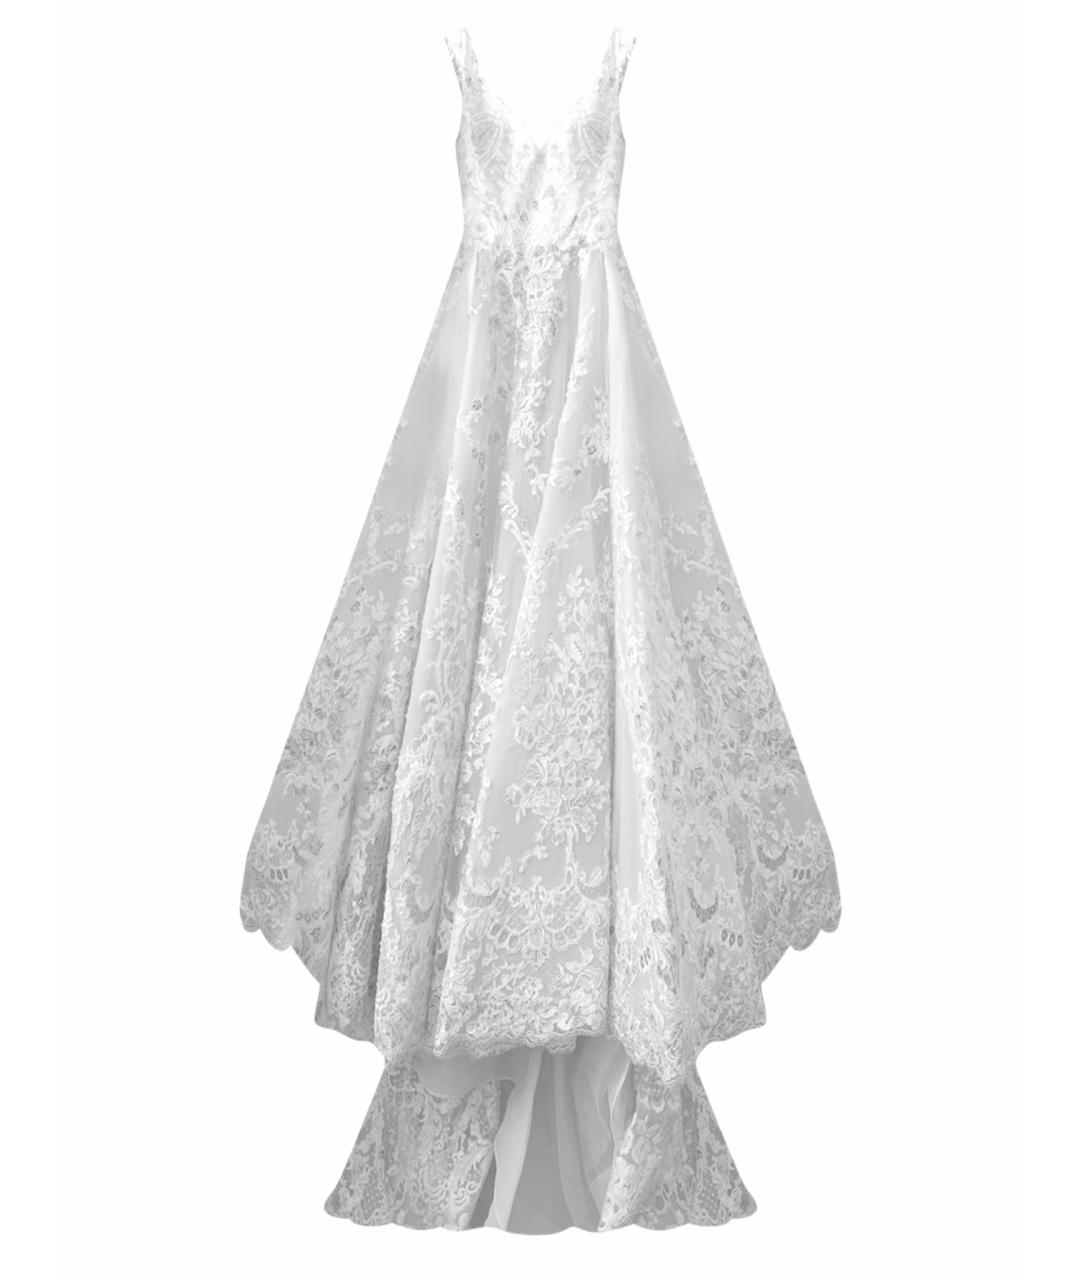 SAIID KOBEISY Белое кружевное свадебное платье, фото 1